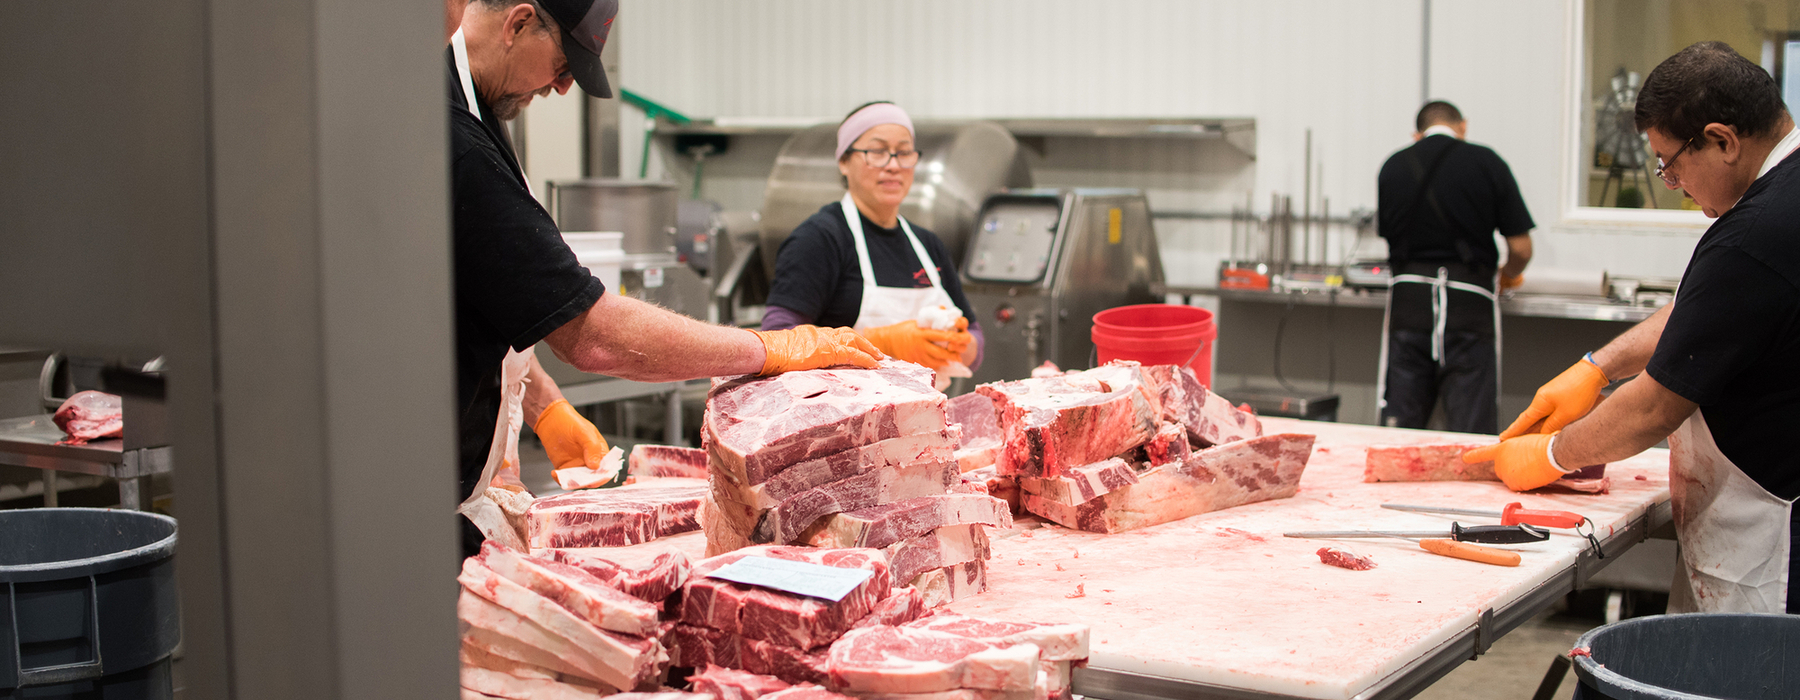 Meat processors break down beef